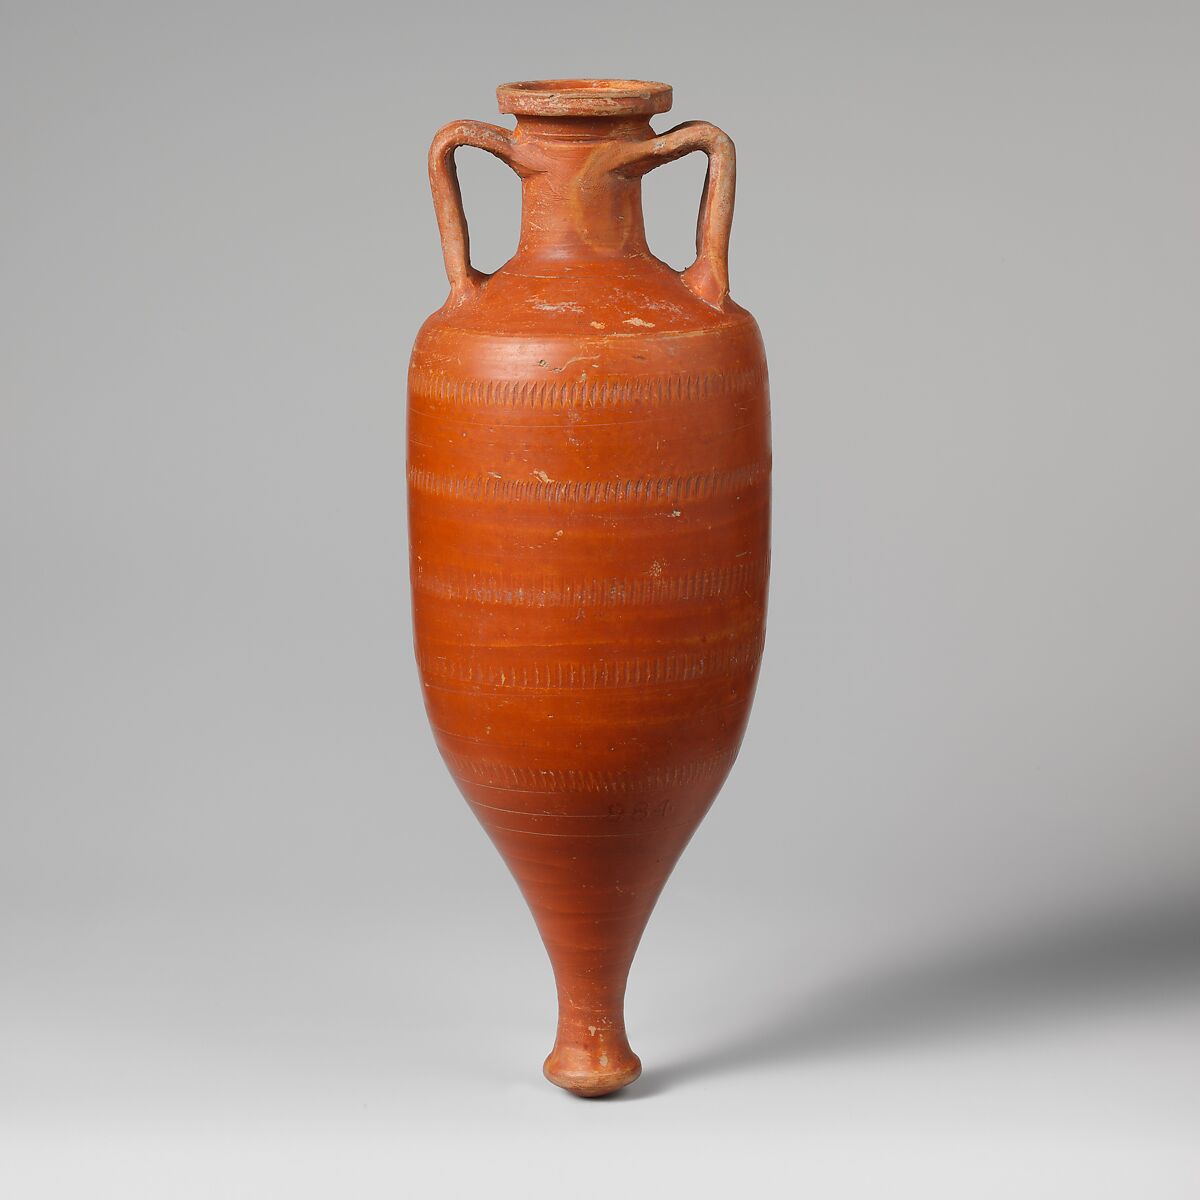 Terracotta amphora (storage jar), Terracotta, Roman 